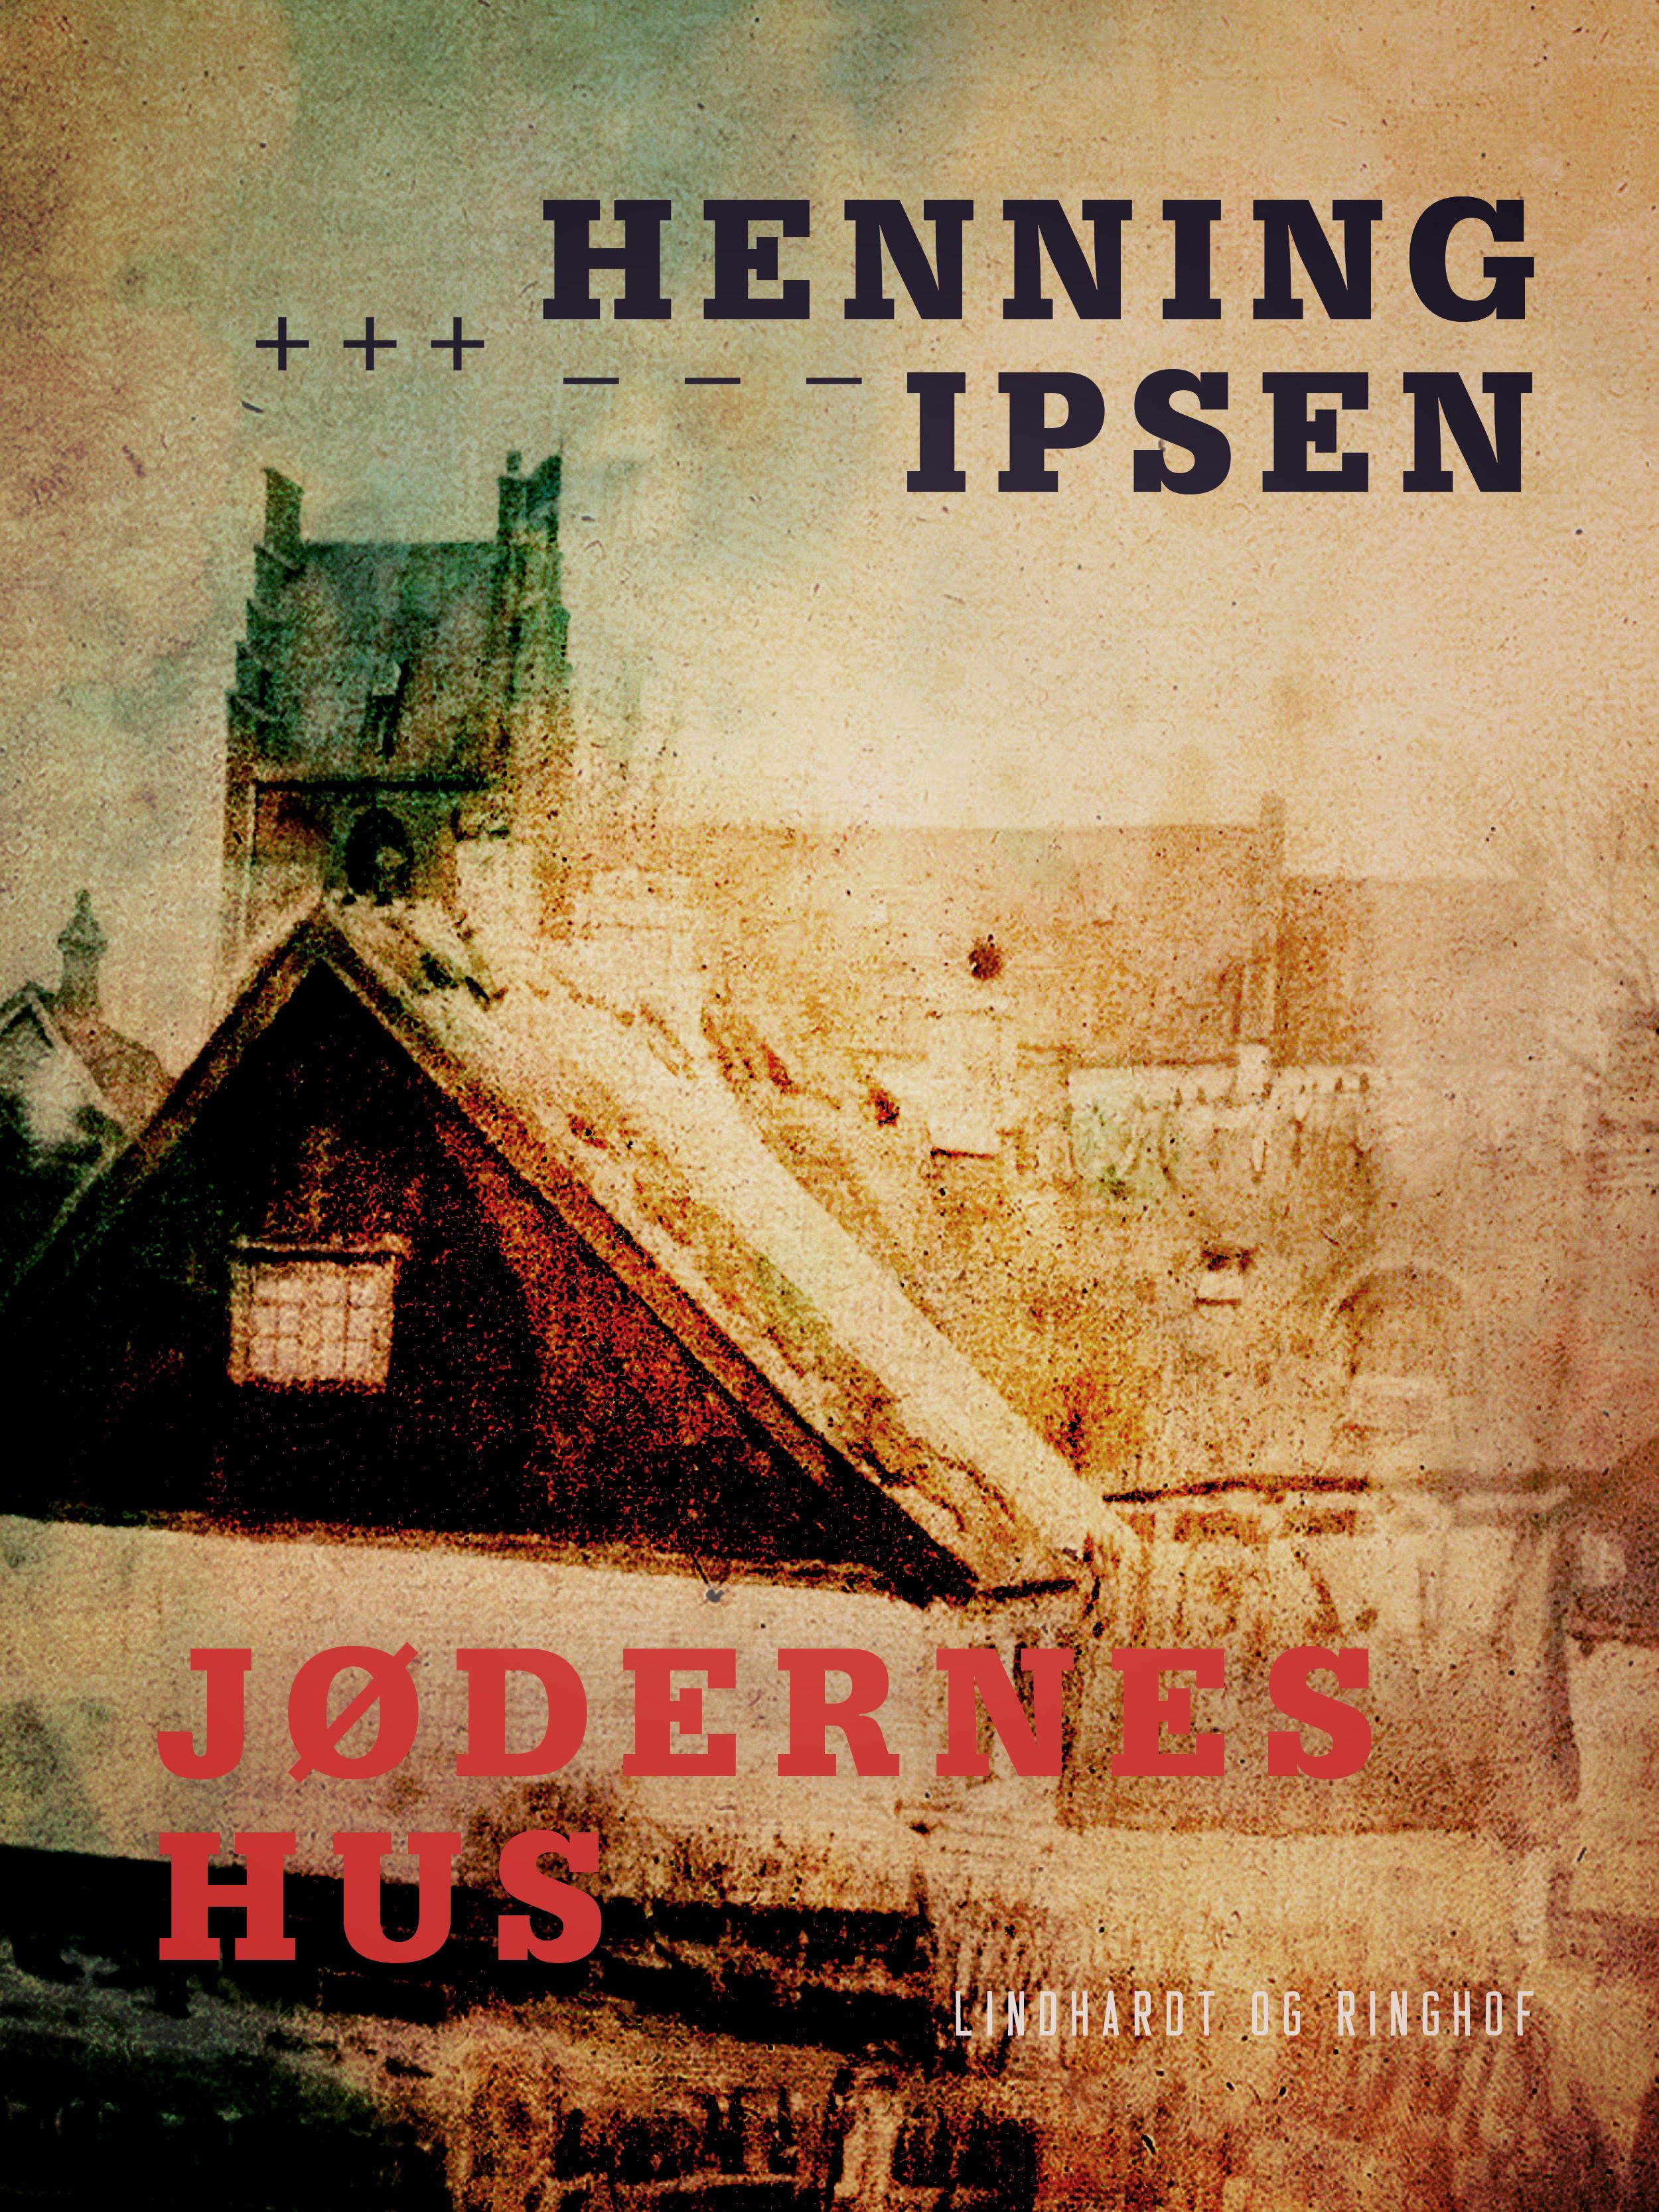 Jødernes hus, e-bok av Henning Ipsen